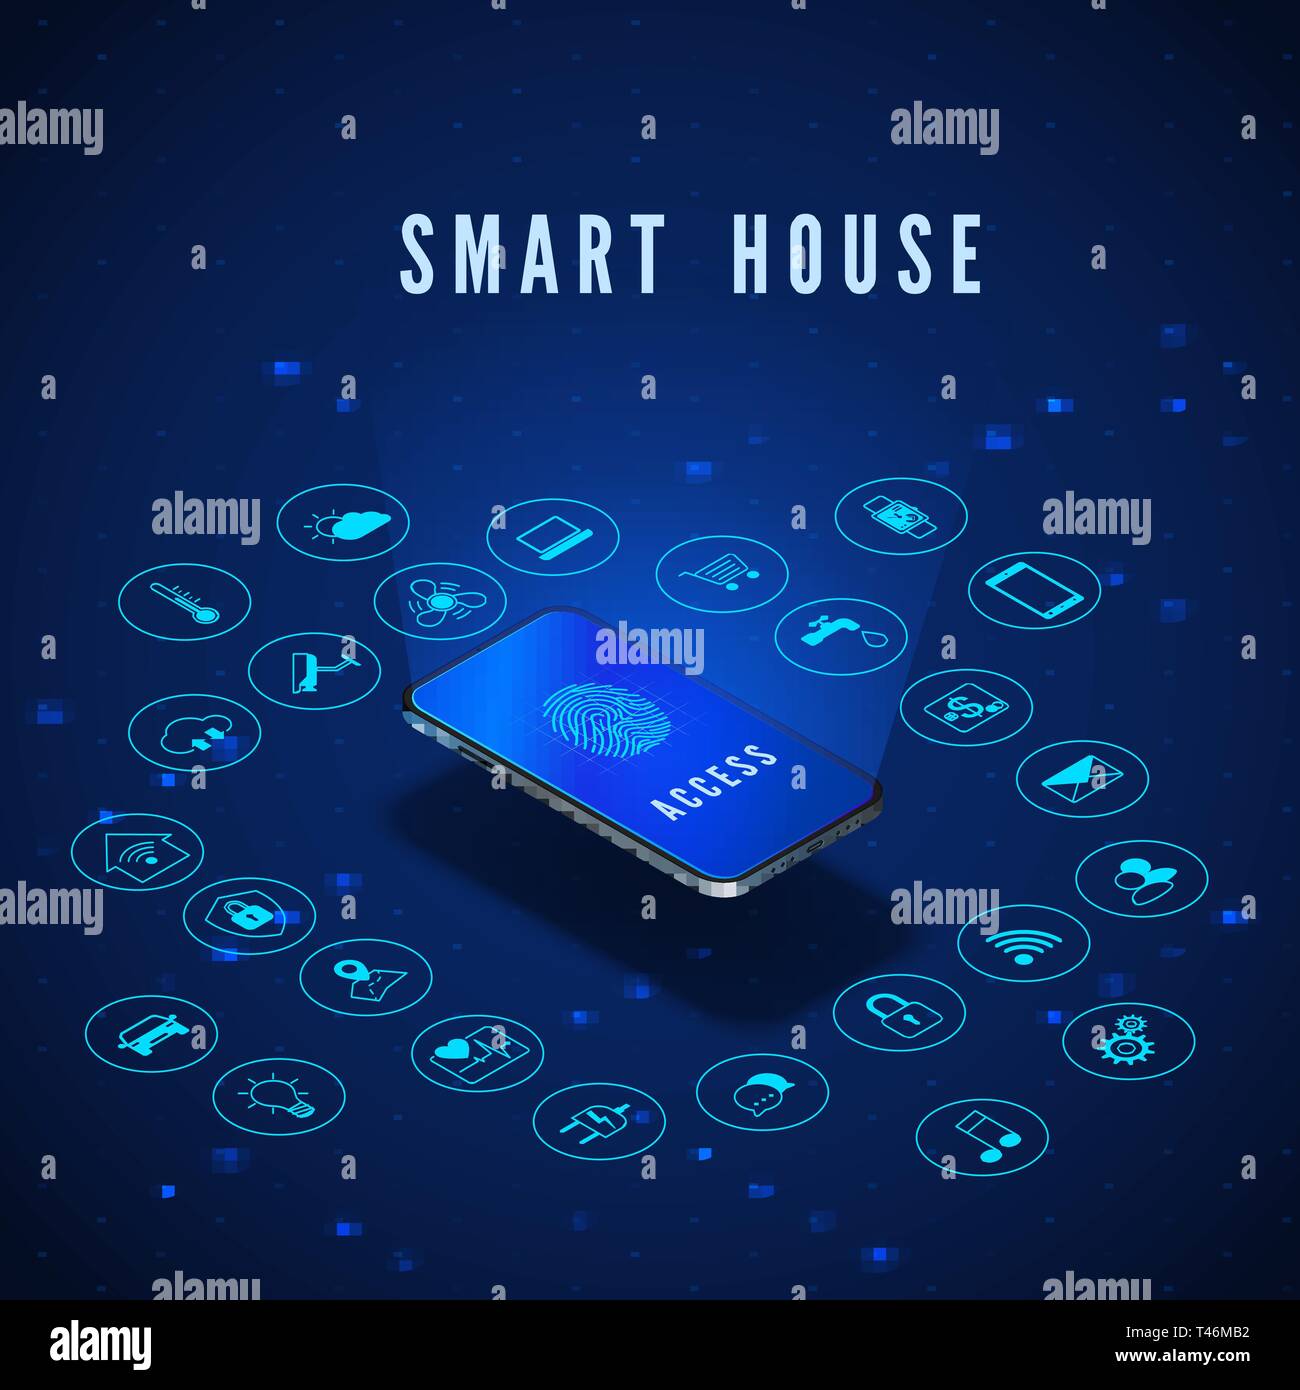 Smart House Banner. Smartphone mit Fingerabdruck auf dem Bildschirm und Symbole festlegen. Smart Home Monitoring- und Kontrollsysteme. Vector Illustration Stock Vektor